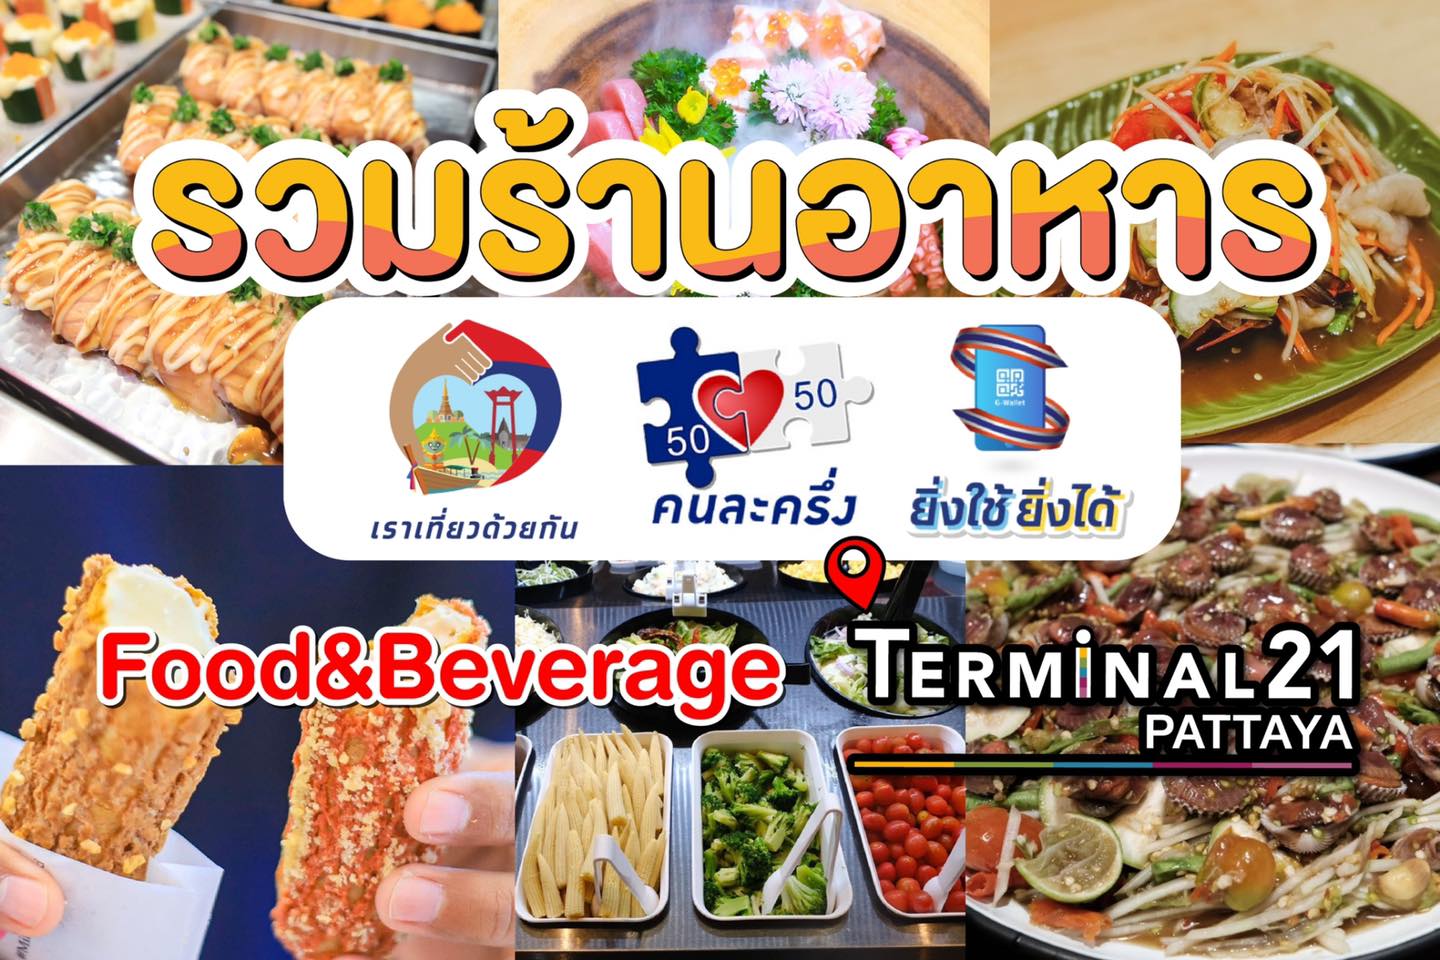 ร้านอาหาร Terminal21 Pattaya ร่วม เราเที่ยวด้วยกัน คนละครึ่ง และ  ยิ่งใช้ยิ่งได้ - Relaxtrip2018.com